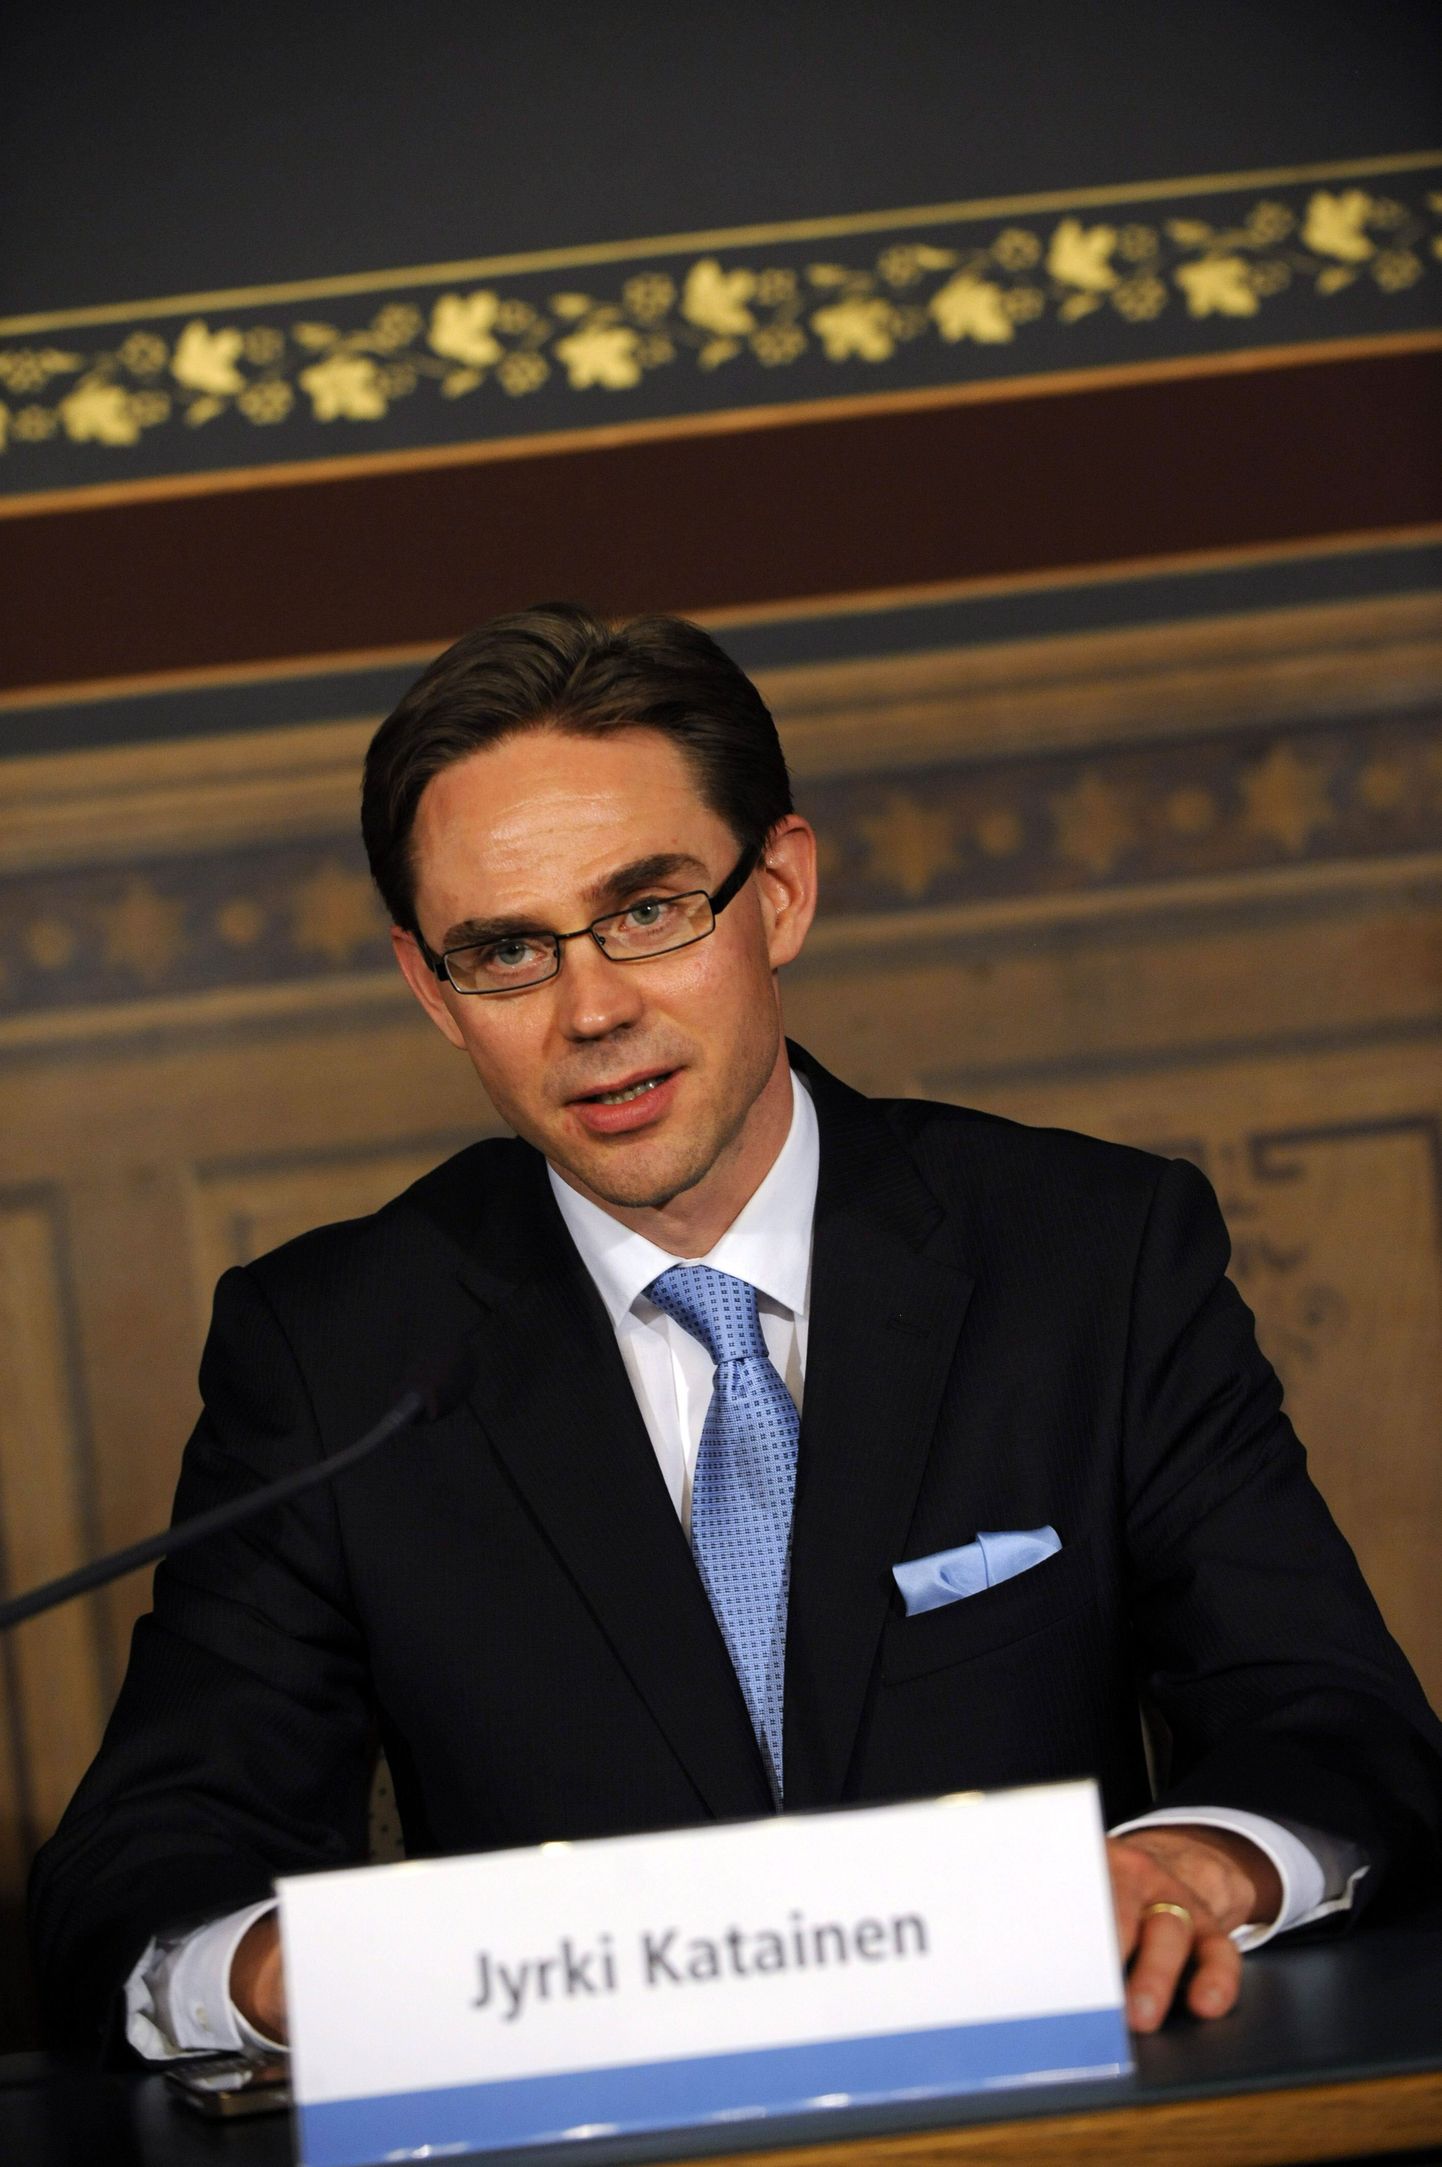 Soome järgmine peaminister Jyrki Katainen